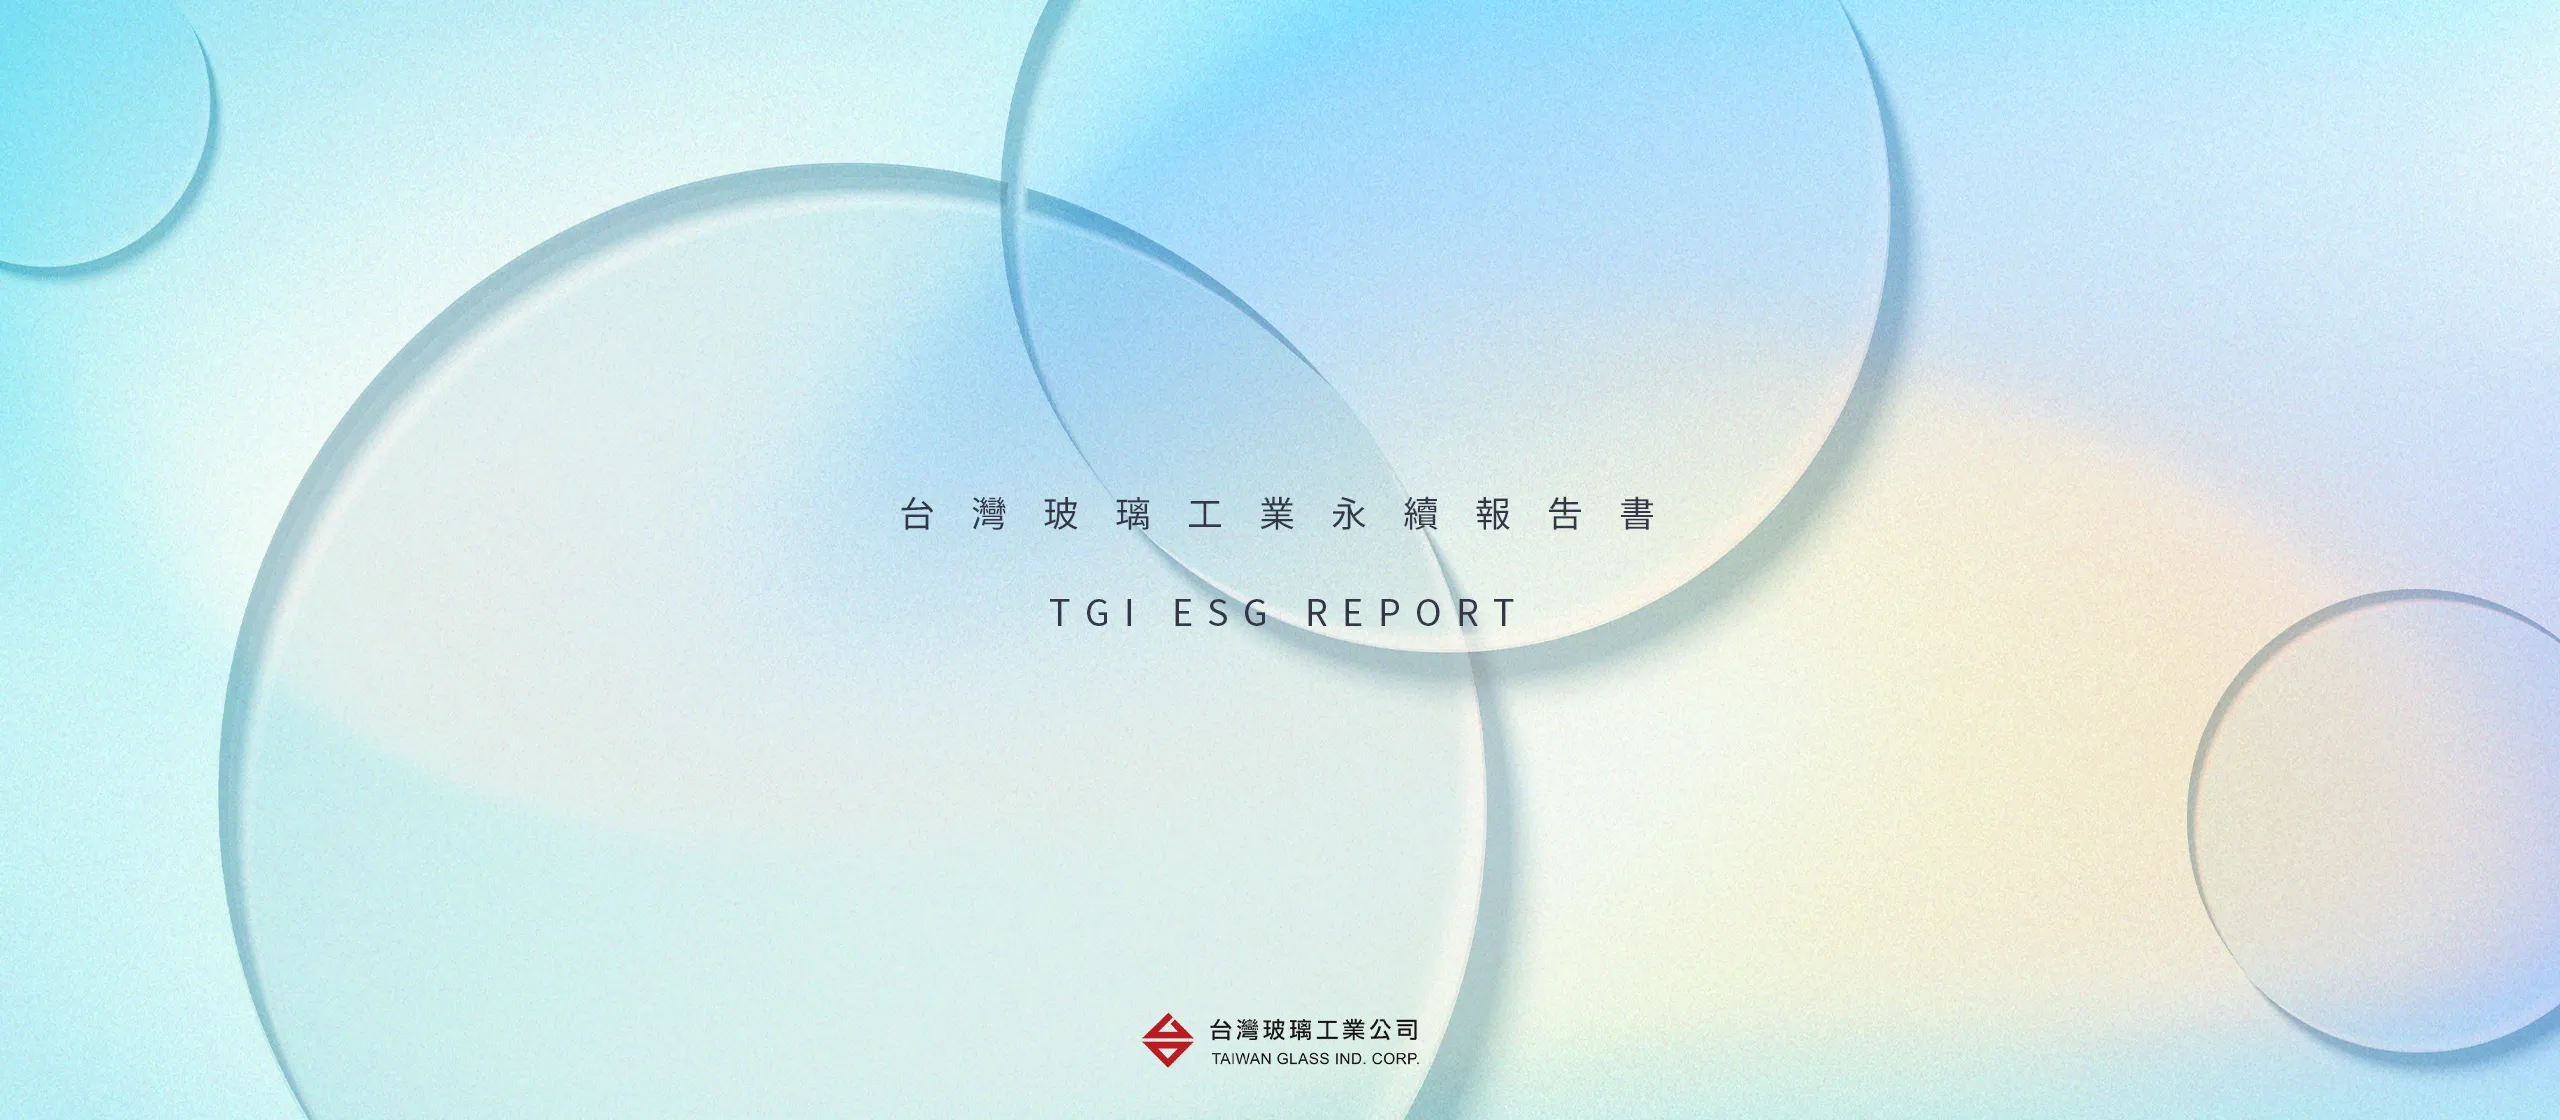 台灣玻璃 2022 ESG 永續報告書 書本設計/平面設計/書本印刷設計/排版設計/CSR企業社會責任報告書美編排版設計/ESG永續報告書美編排版設計/ESG永續報告書網站設計